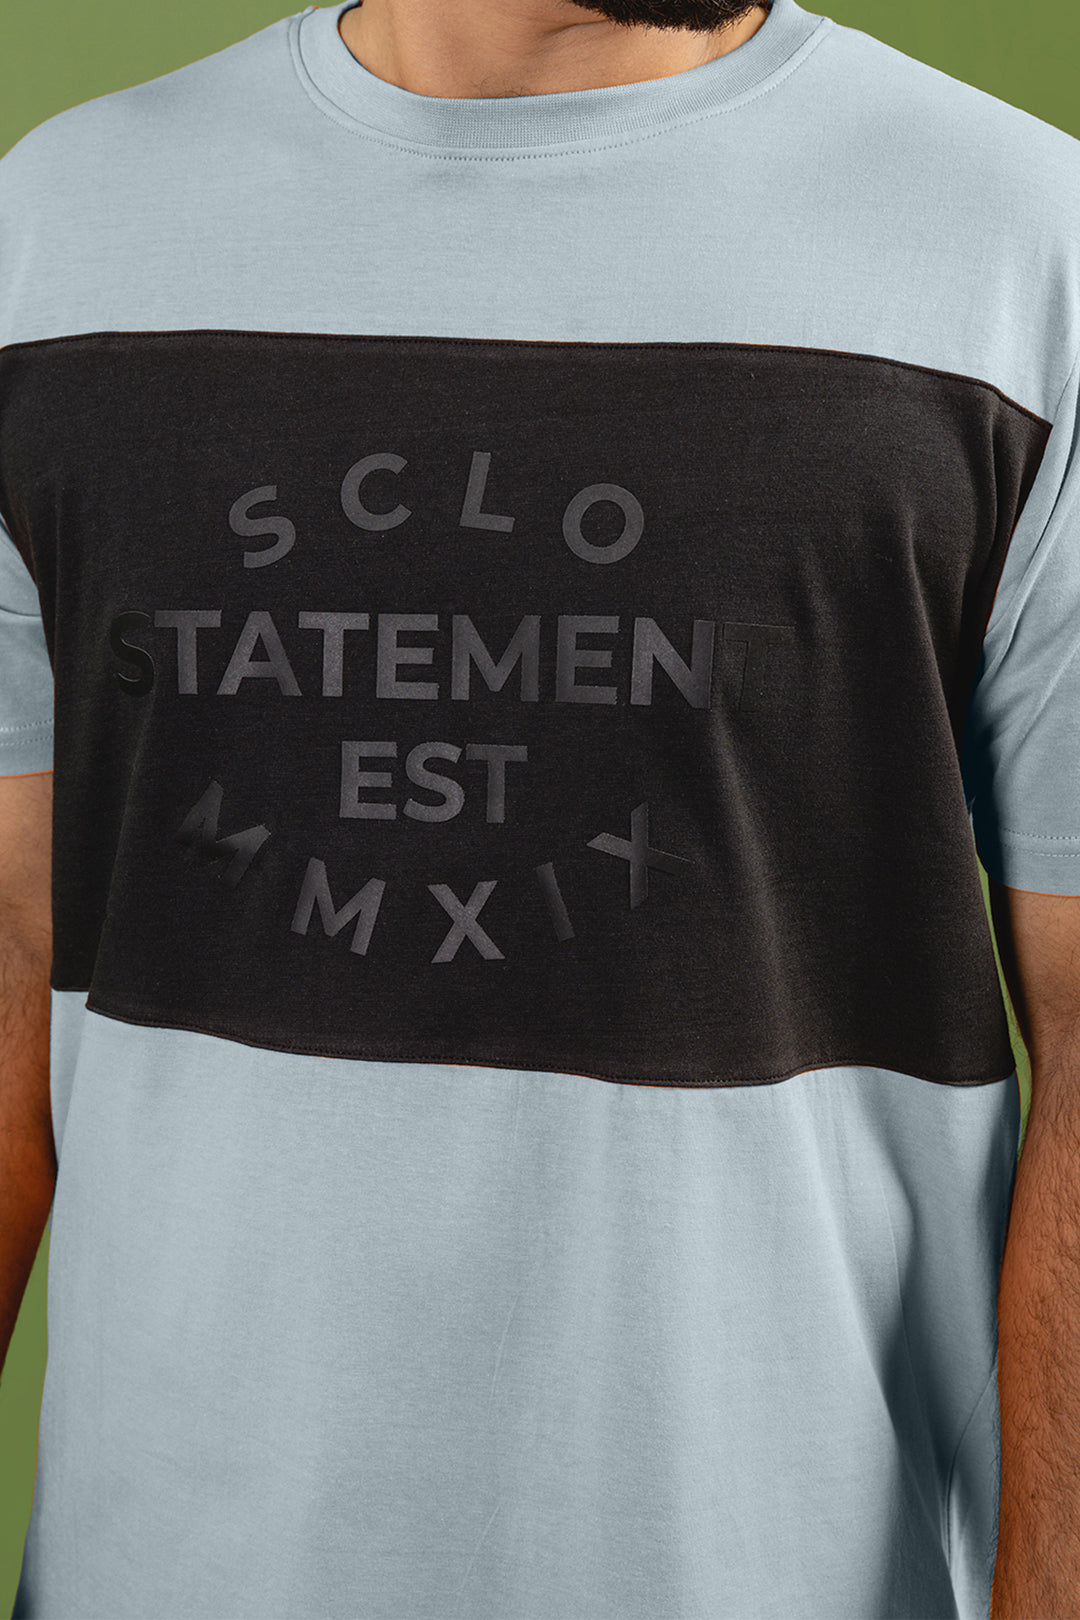 Blue SCLO Statement T-Shirt - S23 - MT0302R